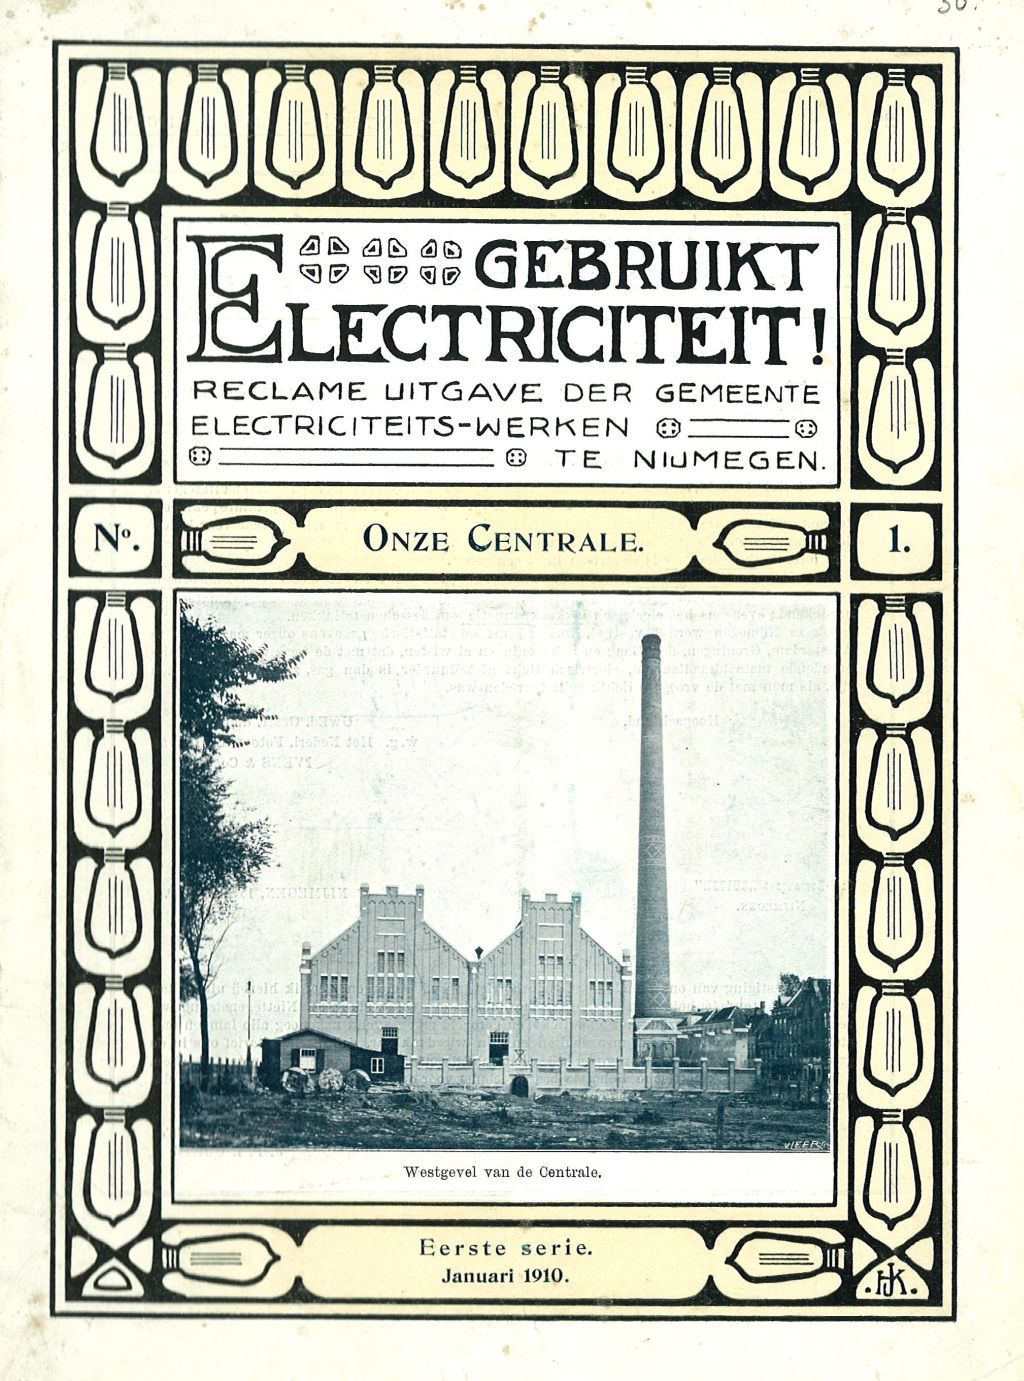 Boekje Gemeentelijke Electriciteitswerken Nijmegen 1910